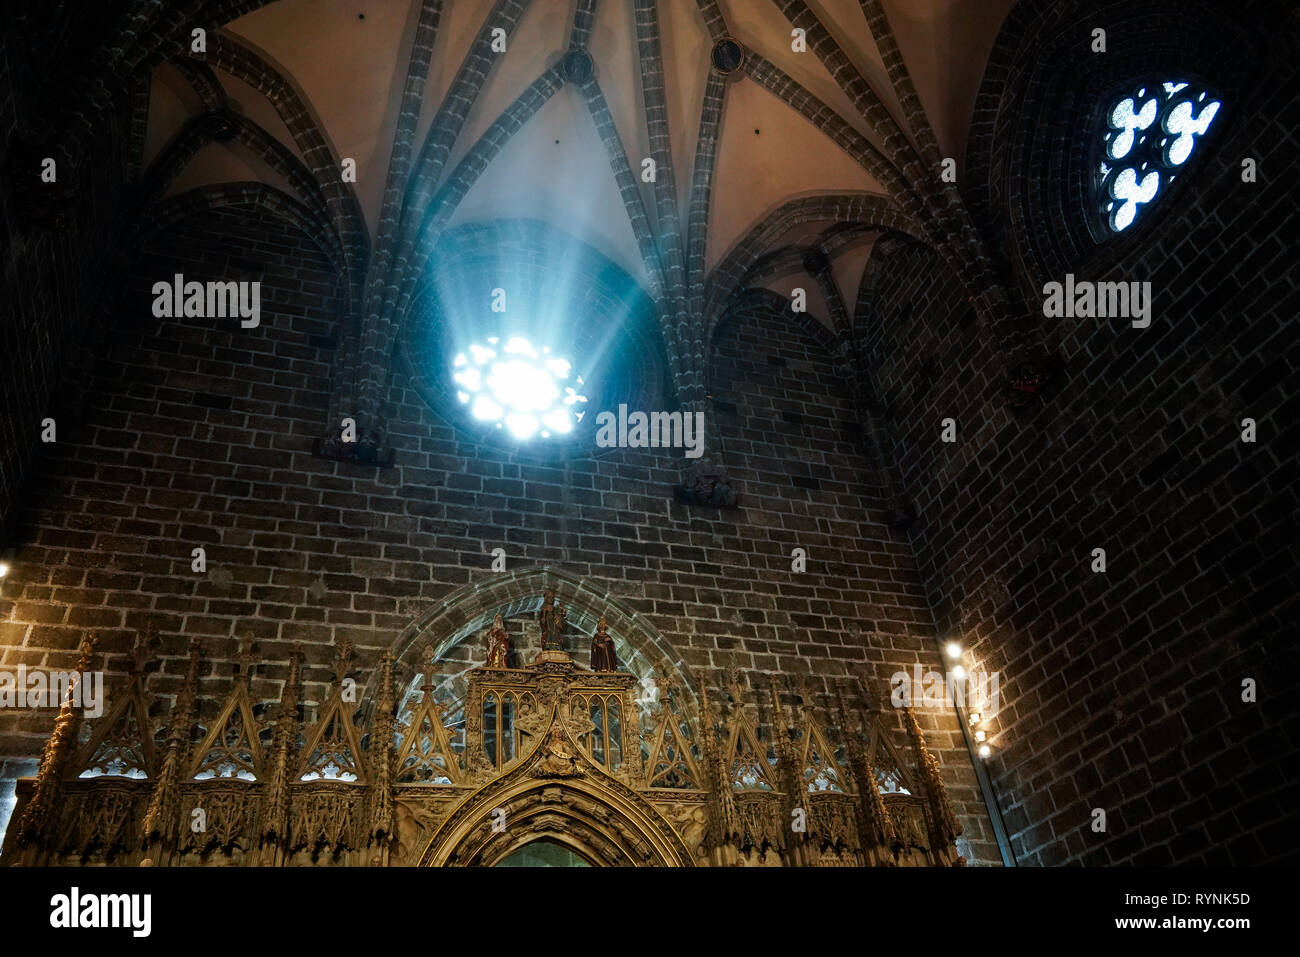 VALENCIA, Espagne - 27 février : vitrail du Saint Graal chapelle dans la cathédrale de Valence en Espagne le 27 février 2019 Banque D'Images